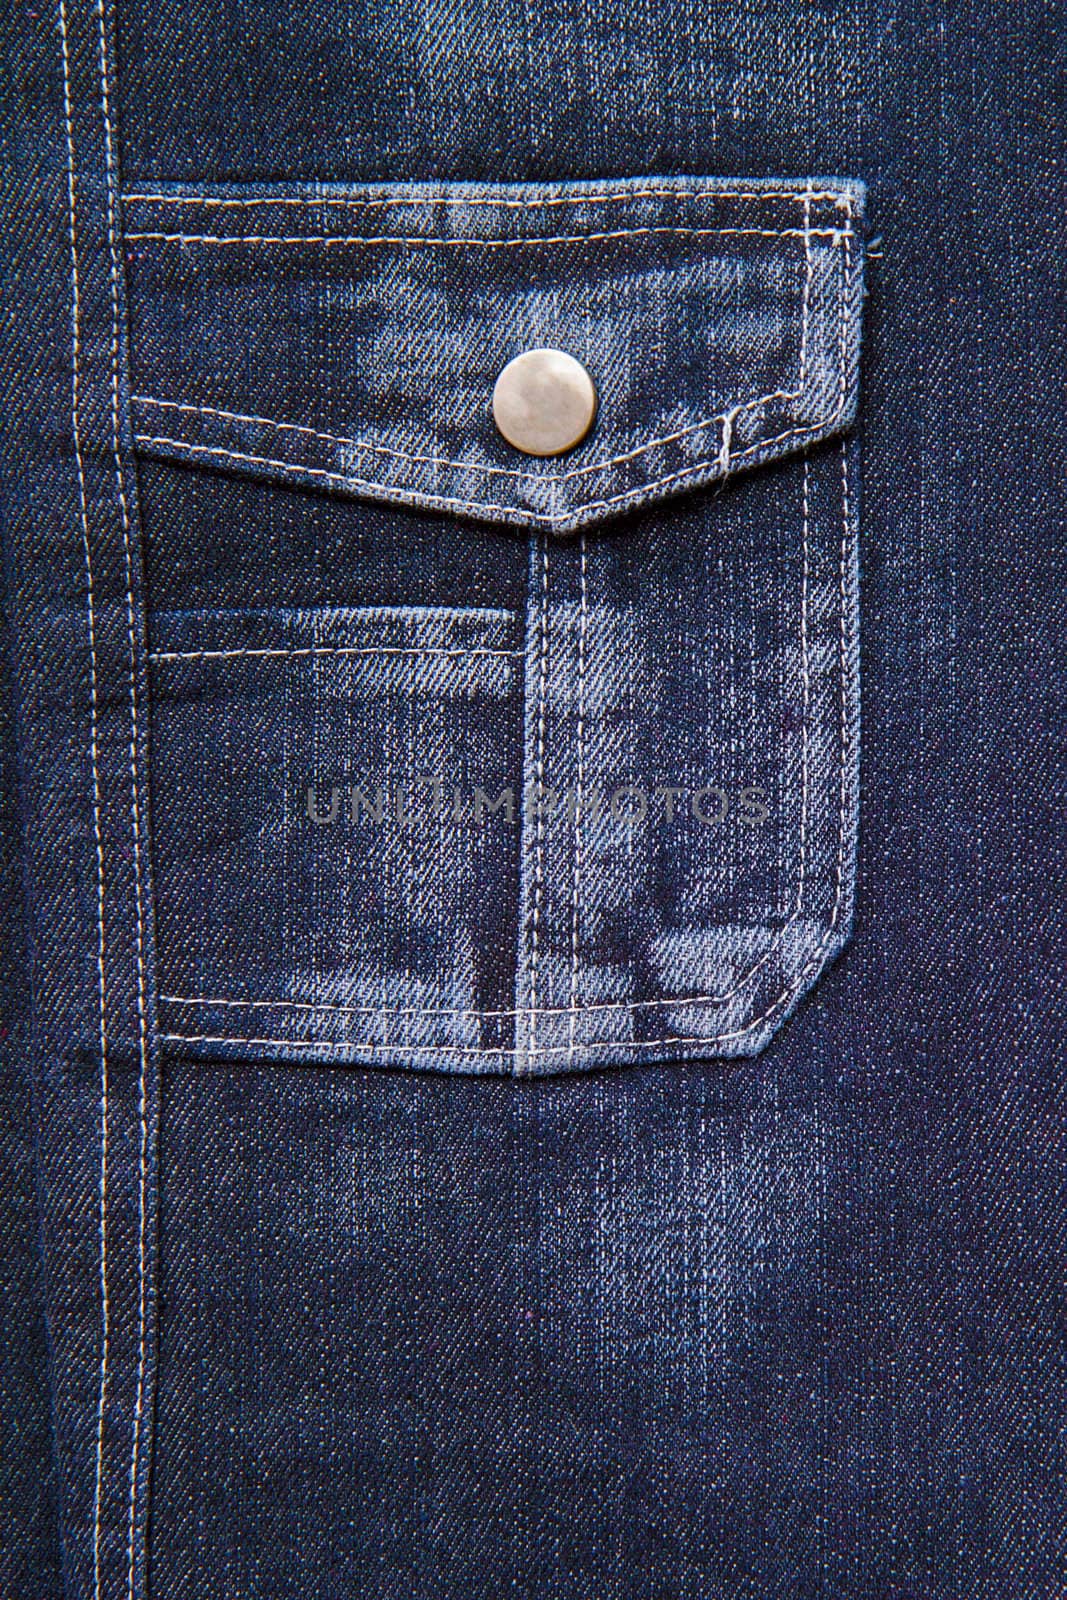 jeans pocket by pzRomashka